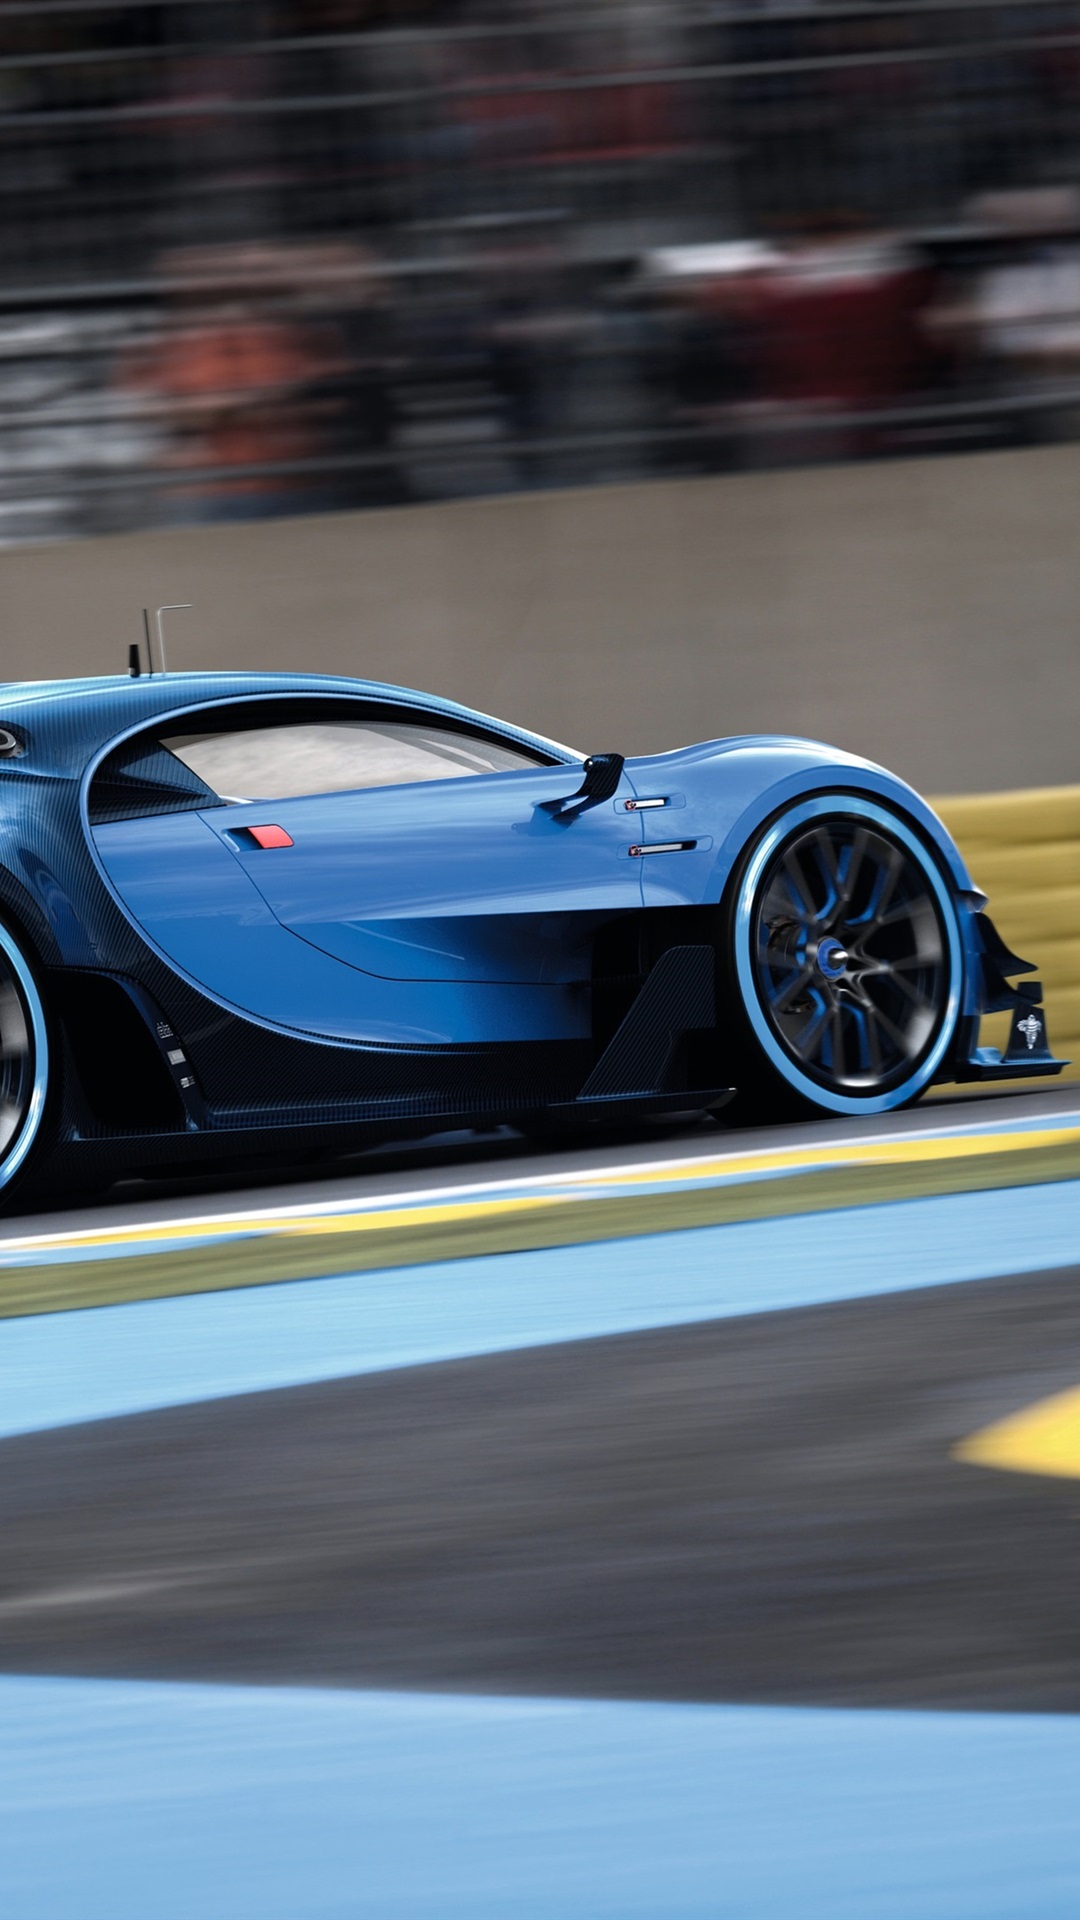 Wallpaper Bugatti Vision Gran Turismo, blue supercar speed 3840x2160 UHD 4K Picture, Image